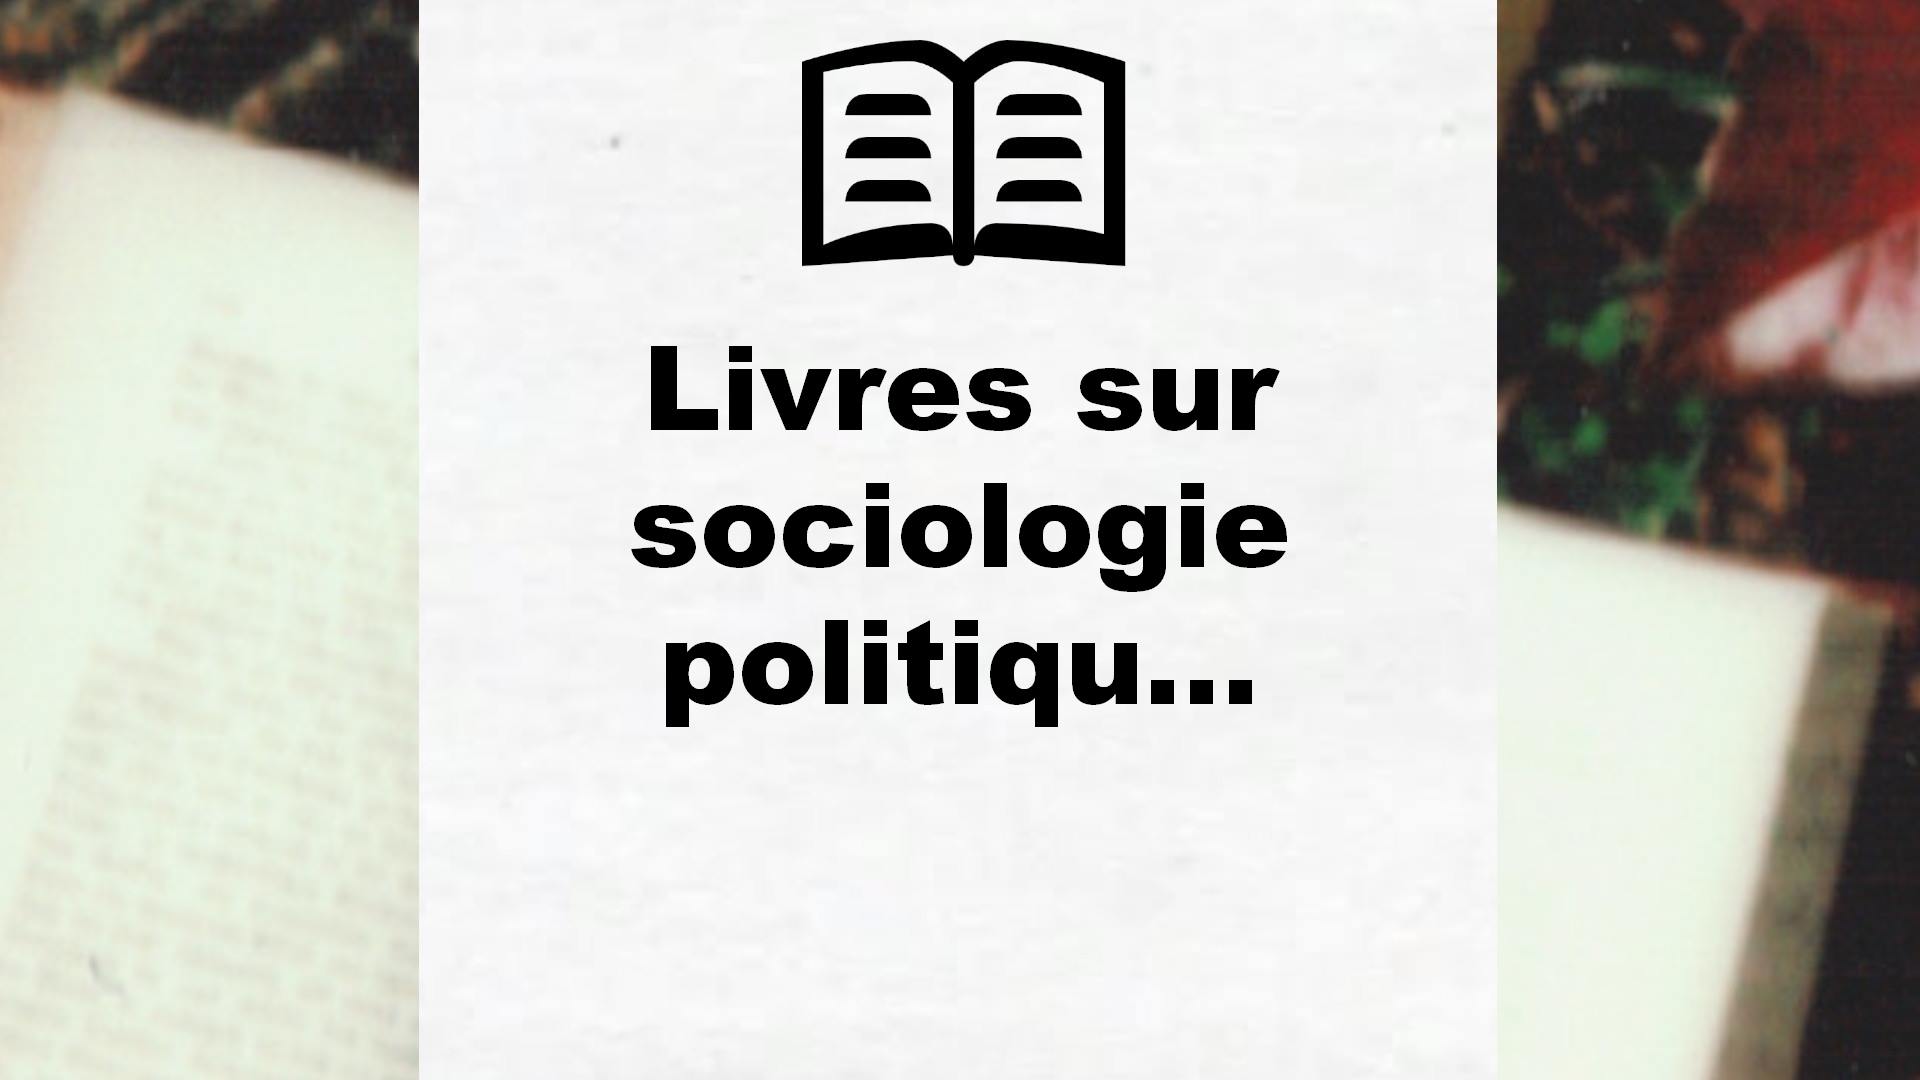 Livres sur sociologie politique